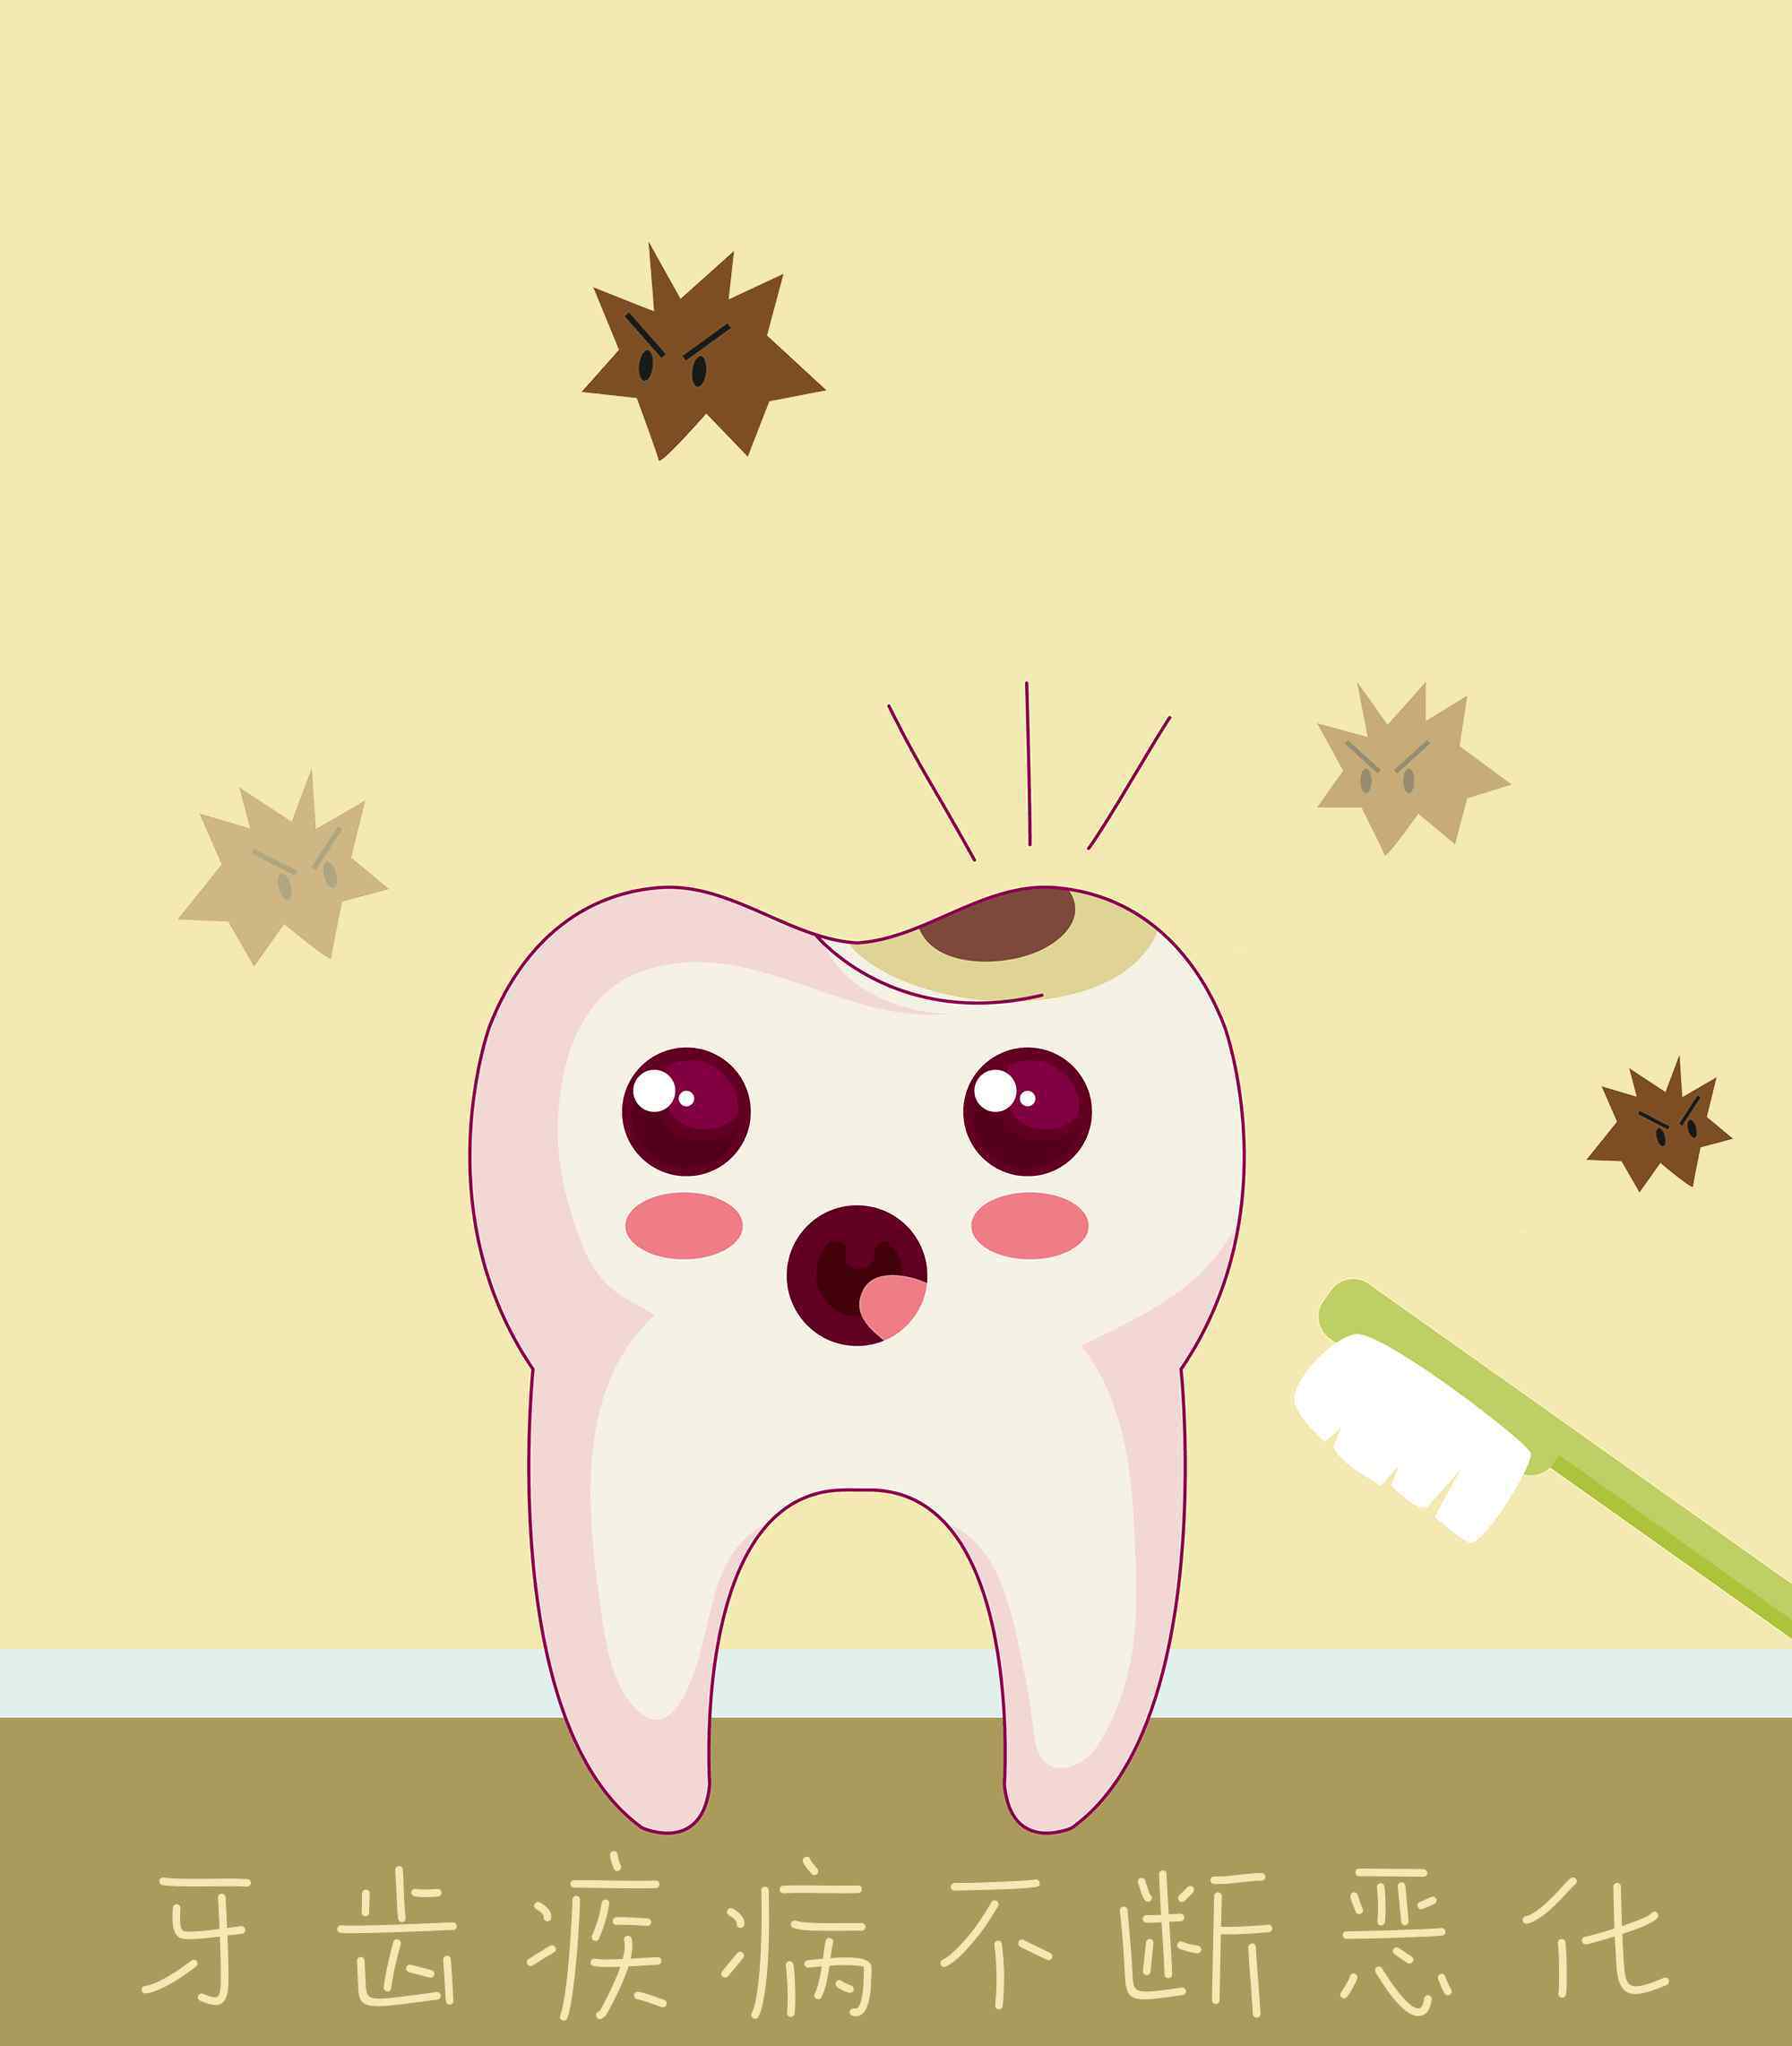 牙垢图片 【腐蚀人类牙齿】有些人生来都没见过的牙菌斑图片